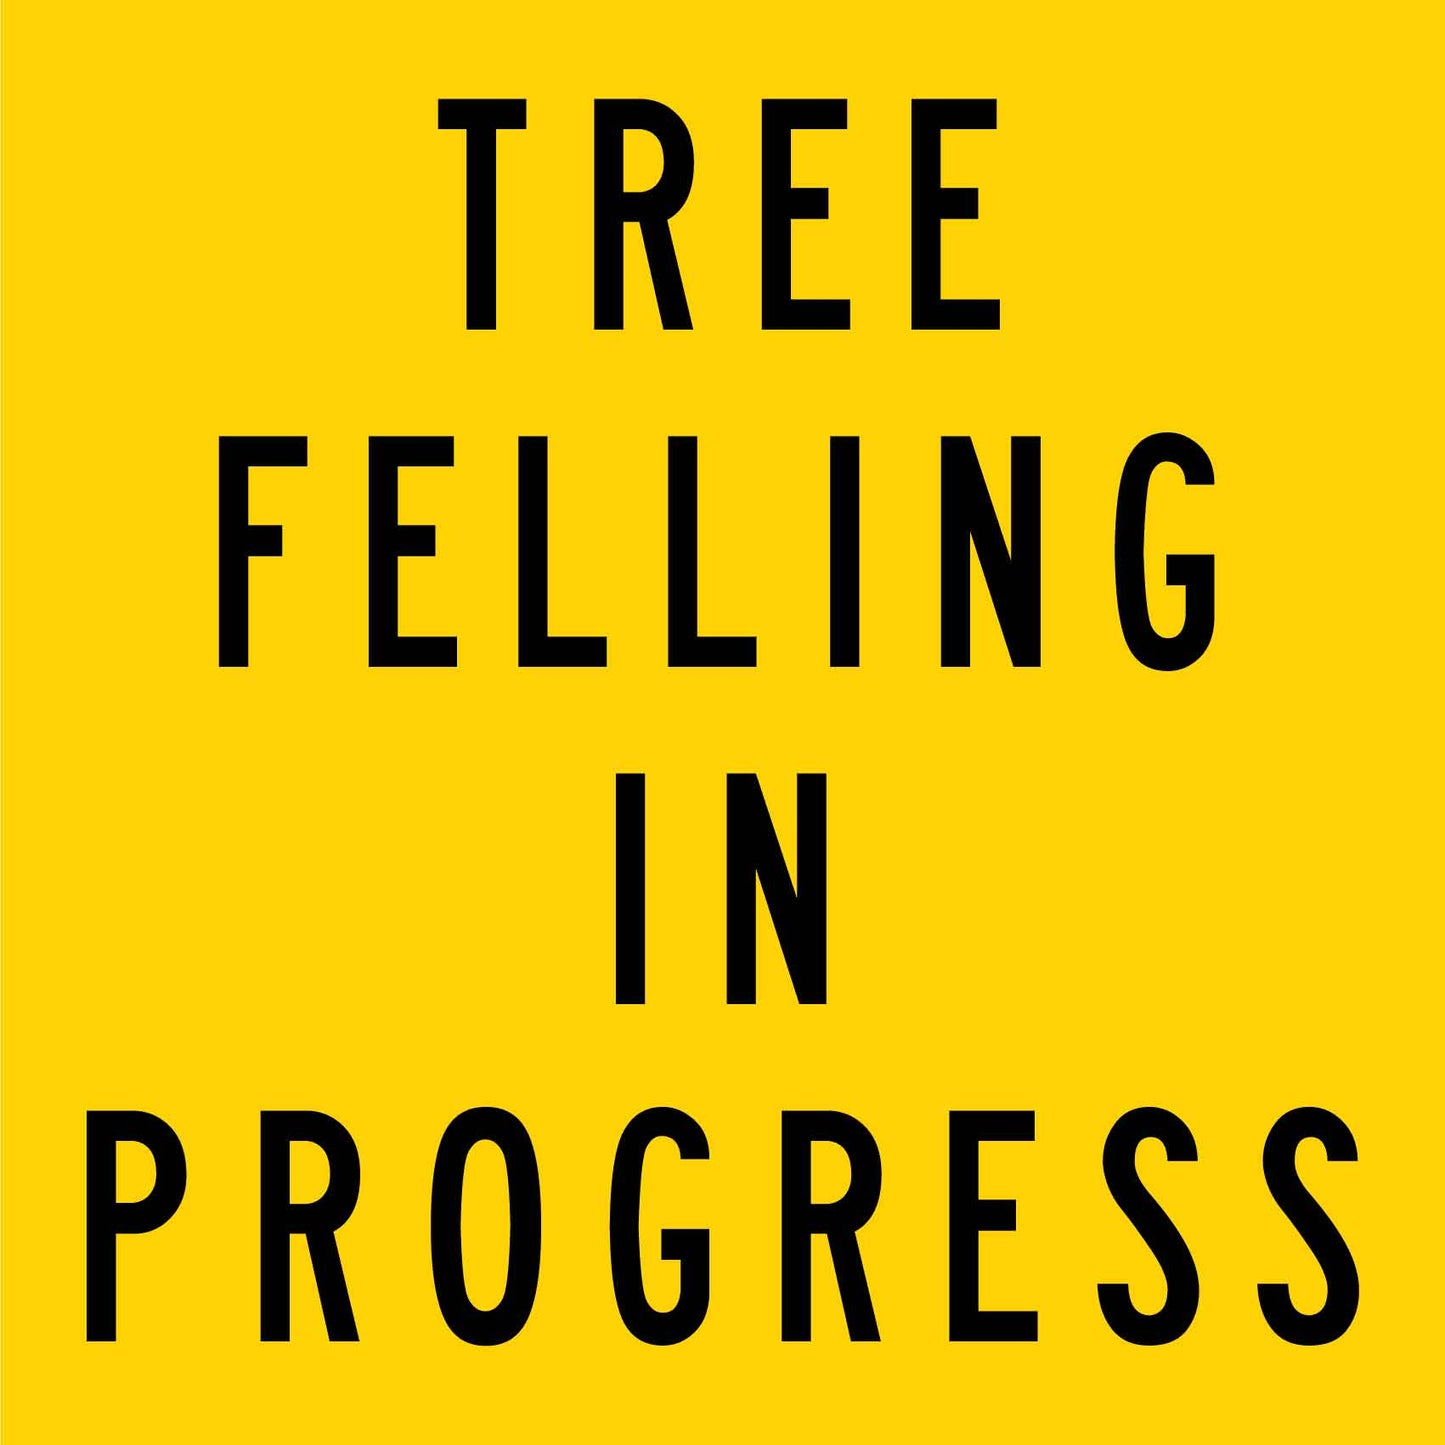 Tree Felling in Progress Multi Message Traffic Sign